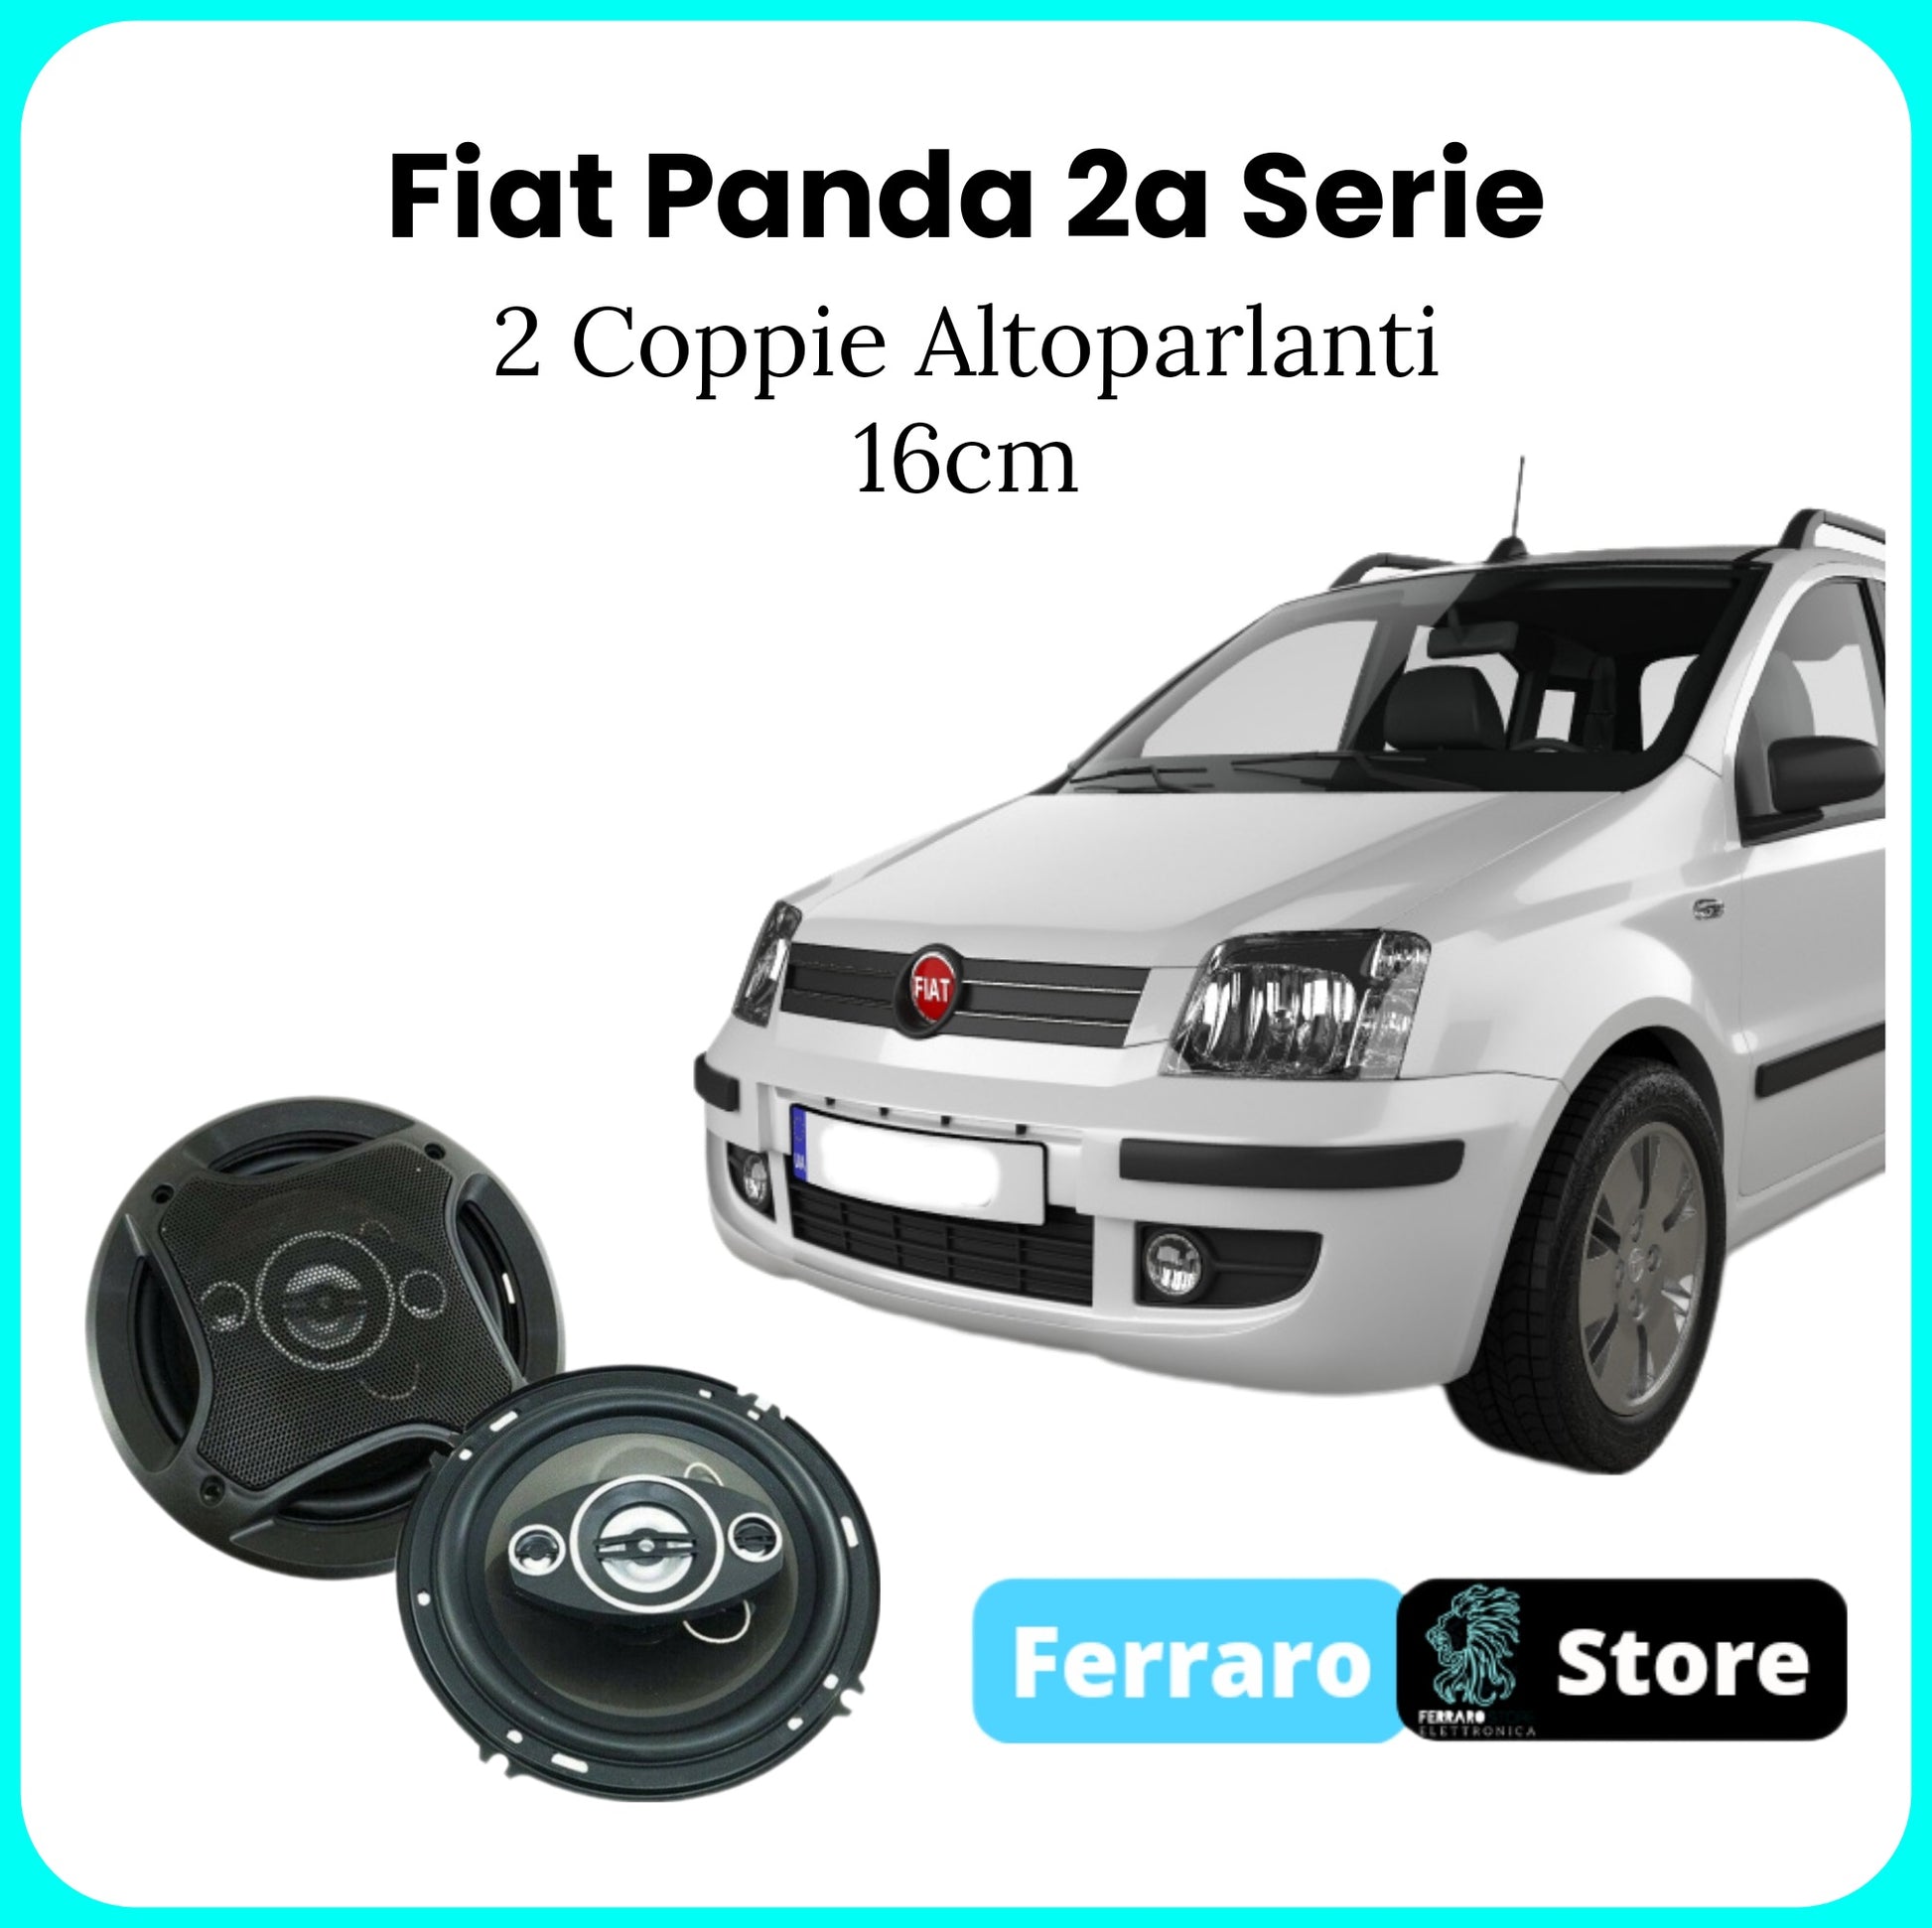 Coppia Altoparlanti per Fiat Panda Seconda Serie - Altoparlanti 16cm, –  Ferraro Store